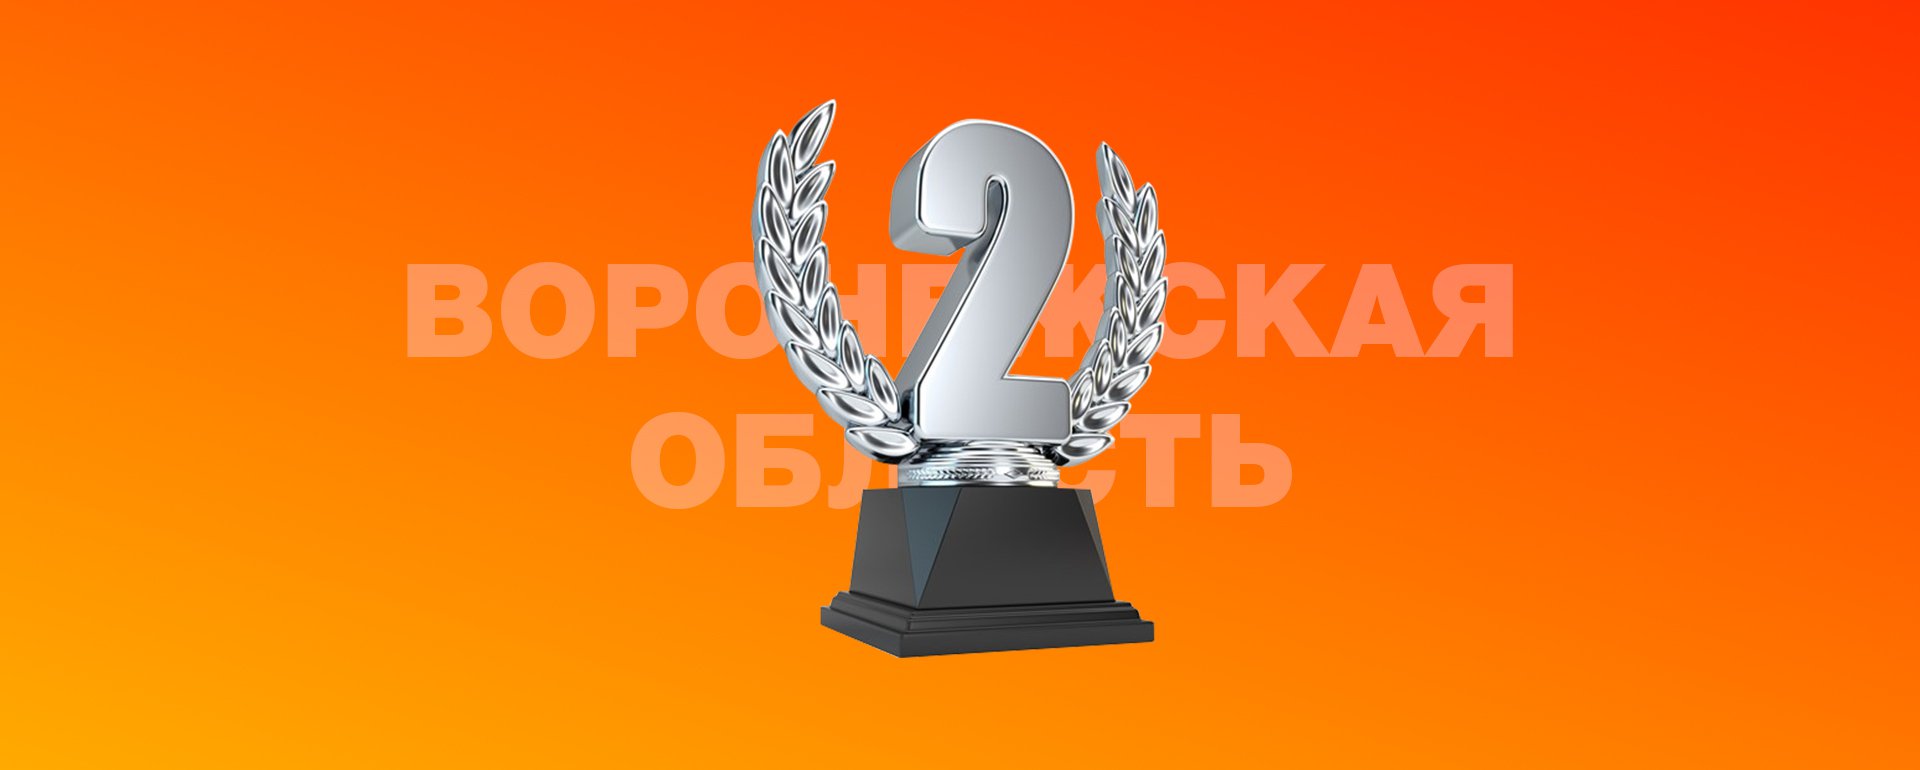 WEB-студия Salavey.net - мы на втором месте среди партнеров Битрикс по Воронежской области!